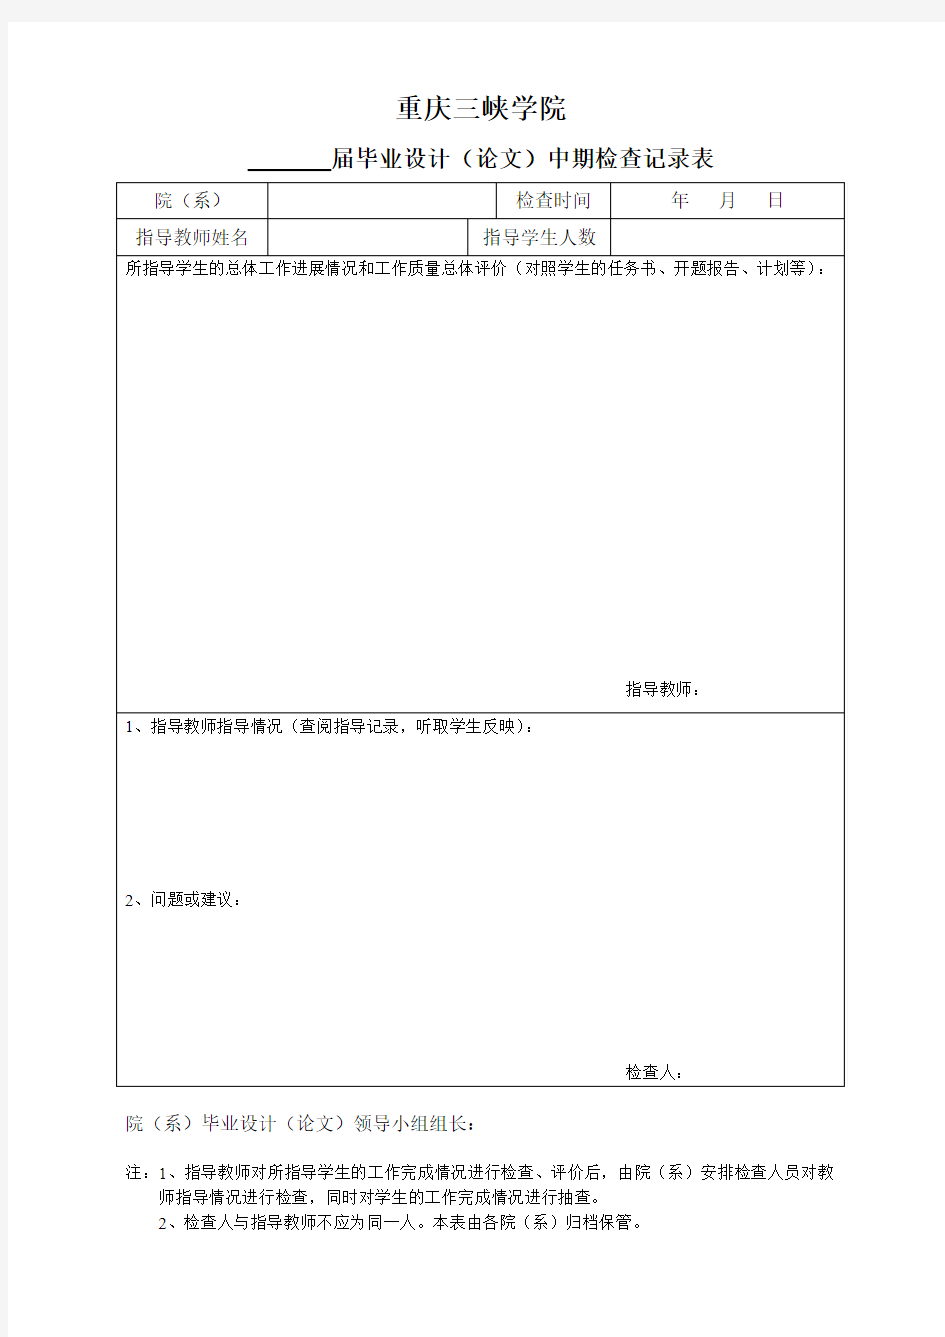 重庆三峡学院毕业设计(论文)中期检查表